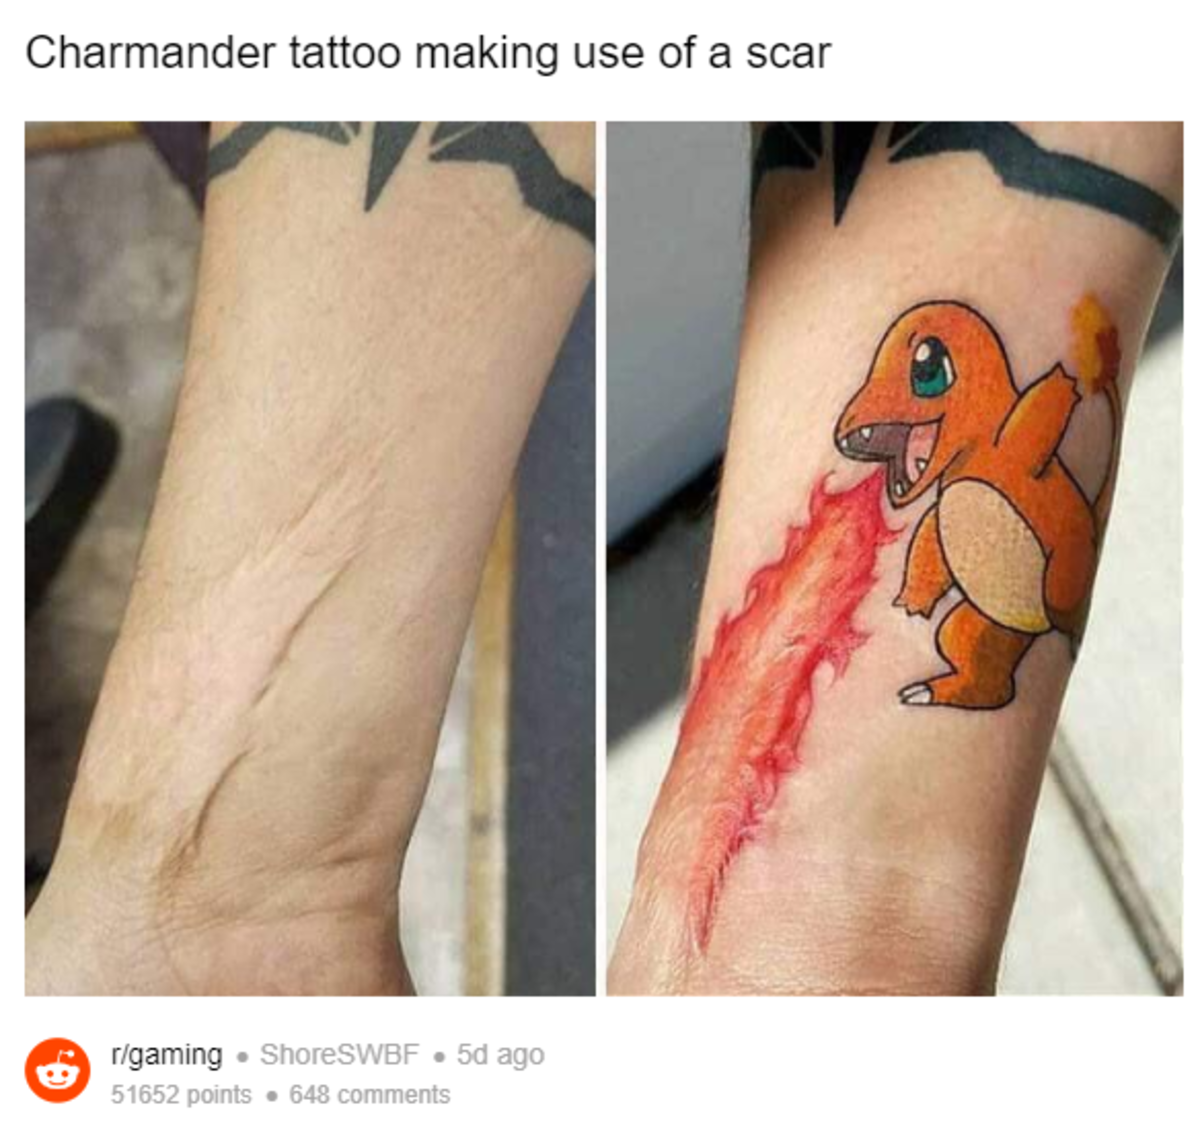 Un aficionado utiliza la cicatriz de su brazo para hacerse un genial tatuaje de Charmander